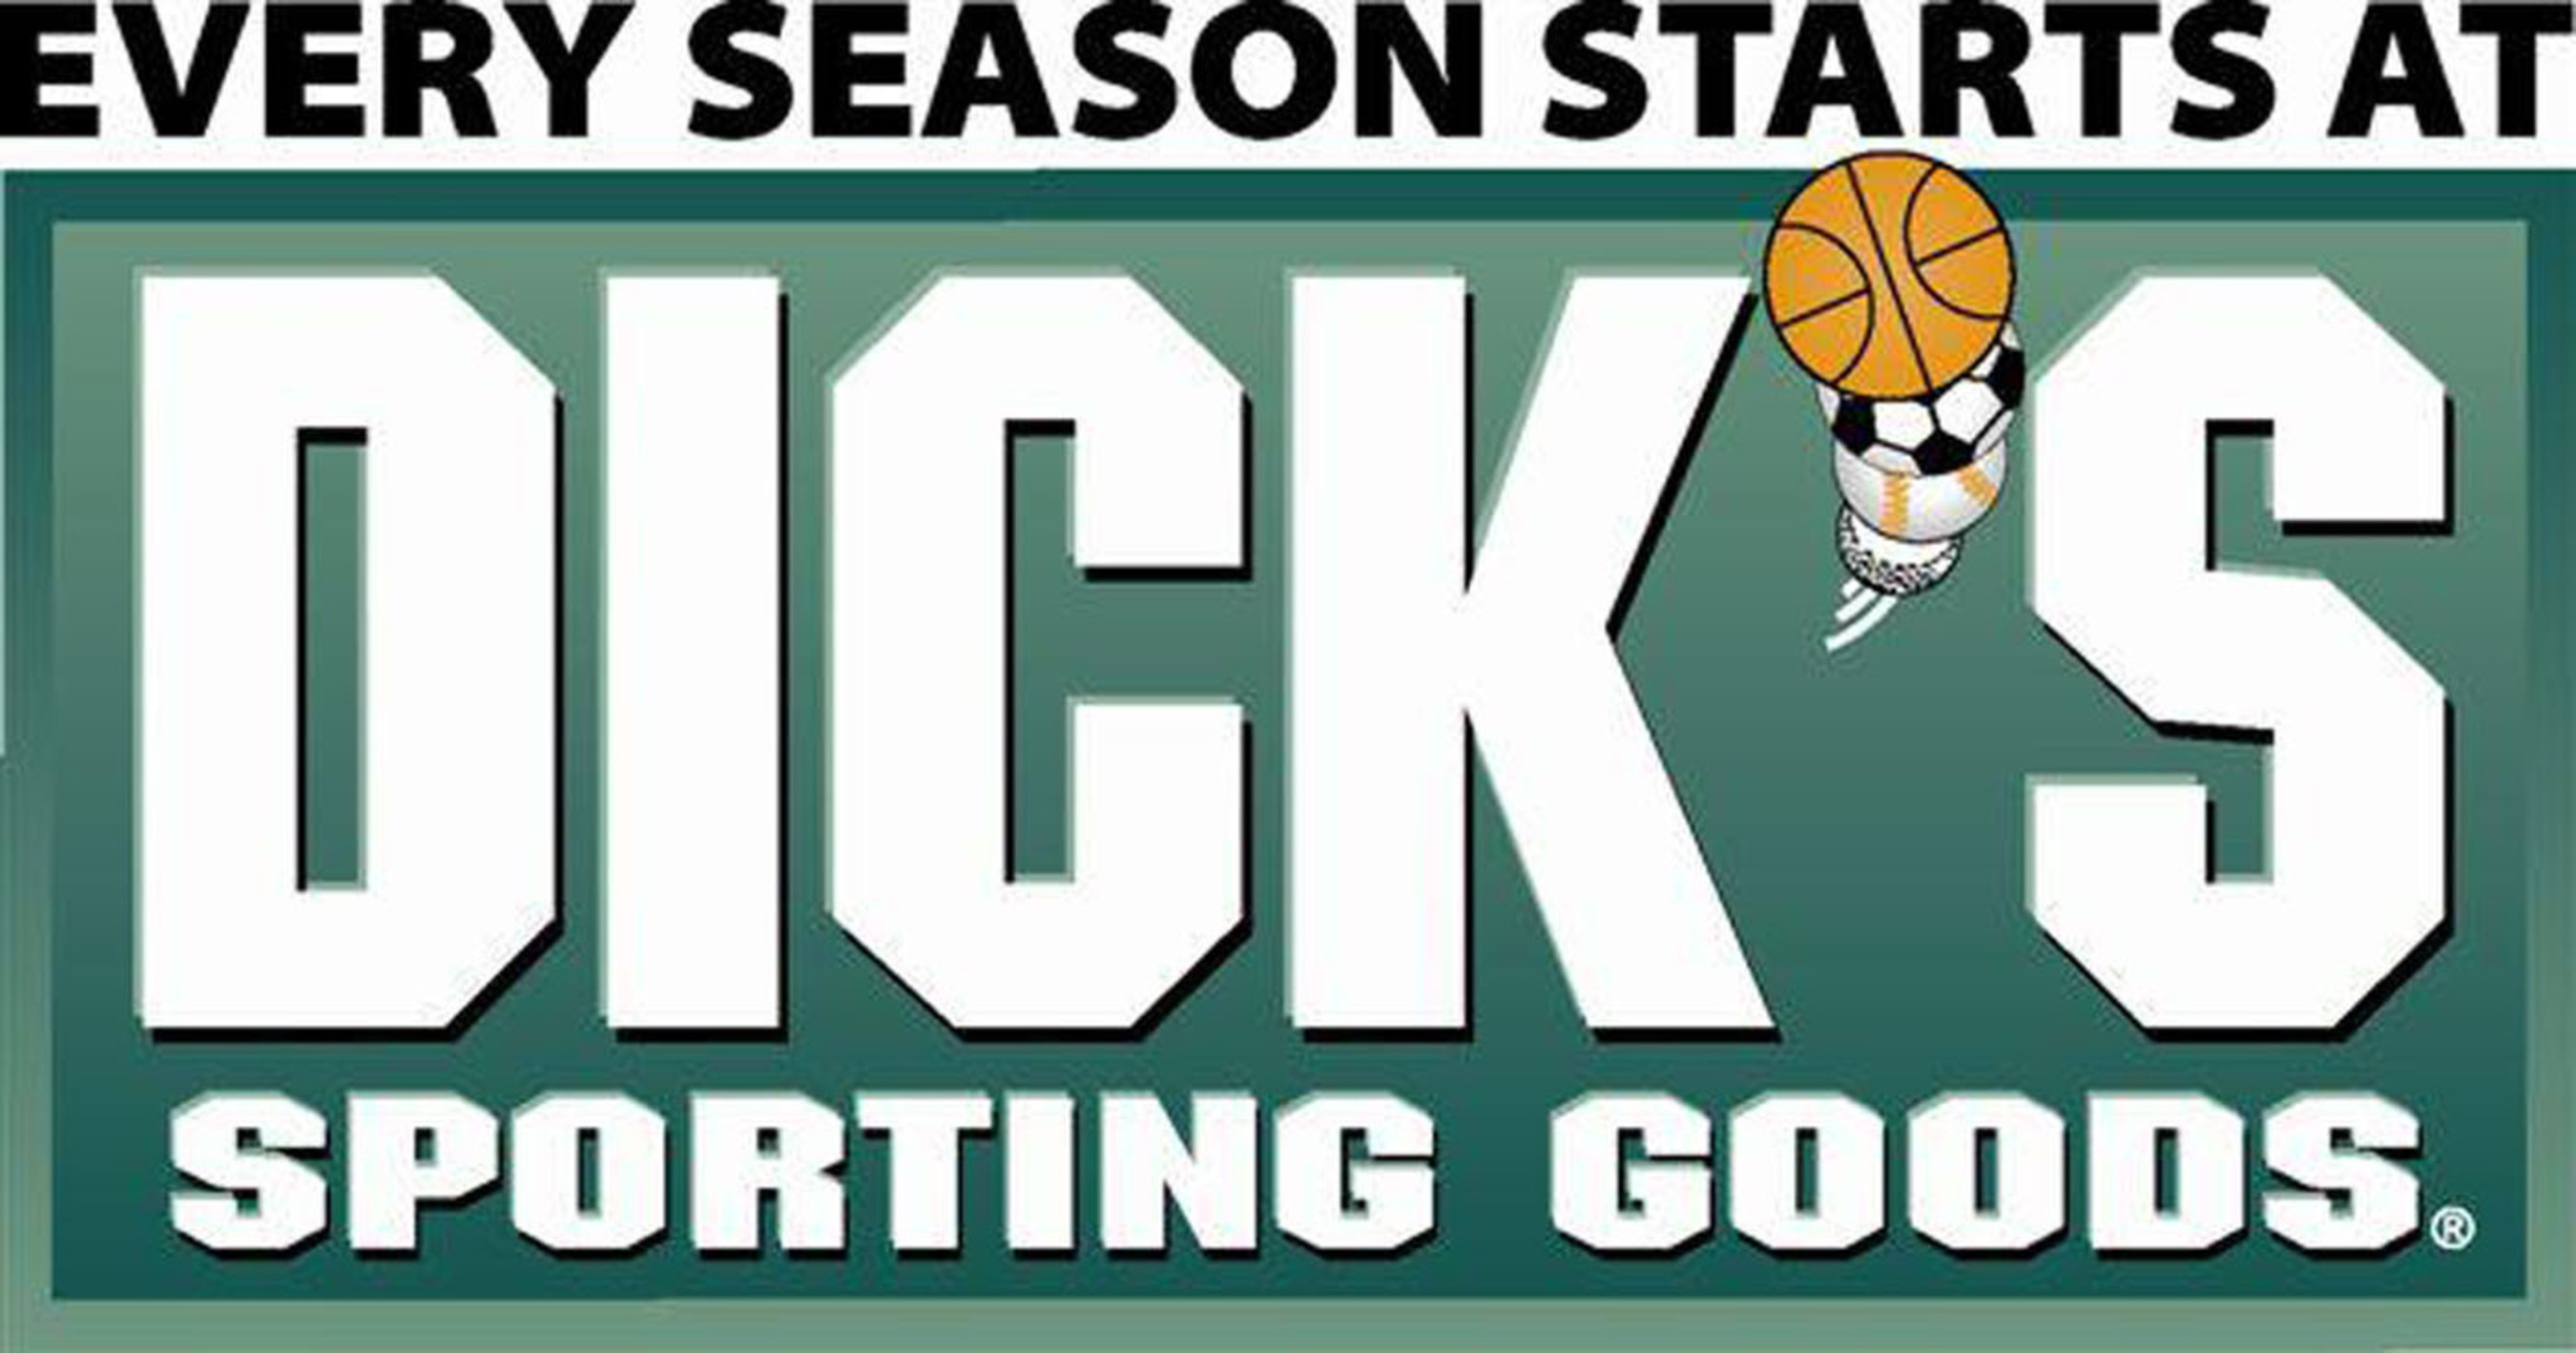 Dick S Sporting Goods Enhances Mobile App To Reward